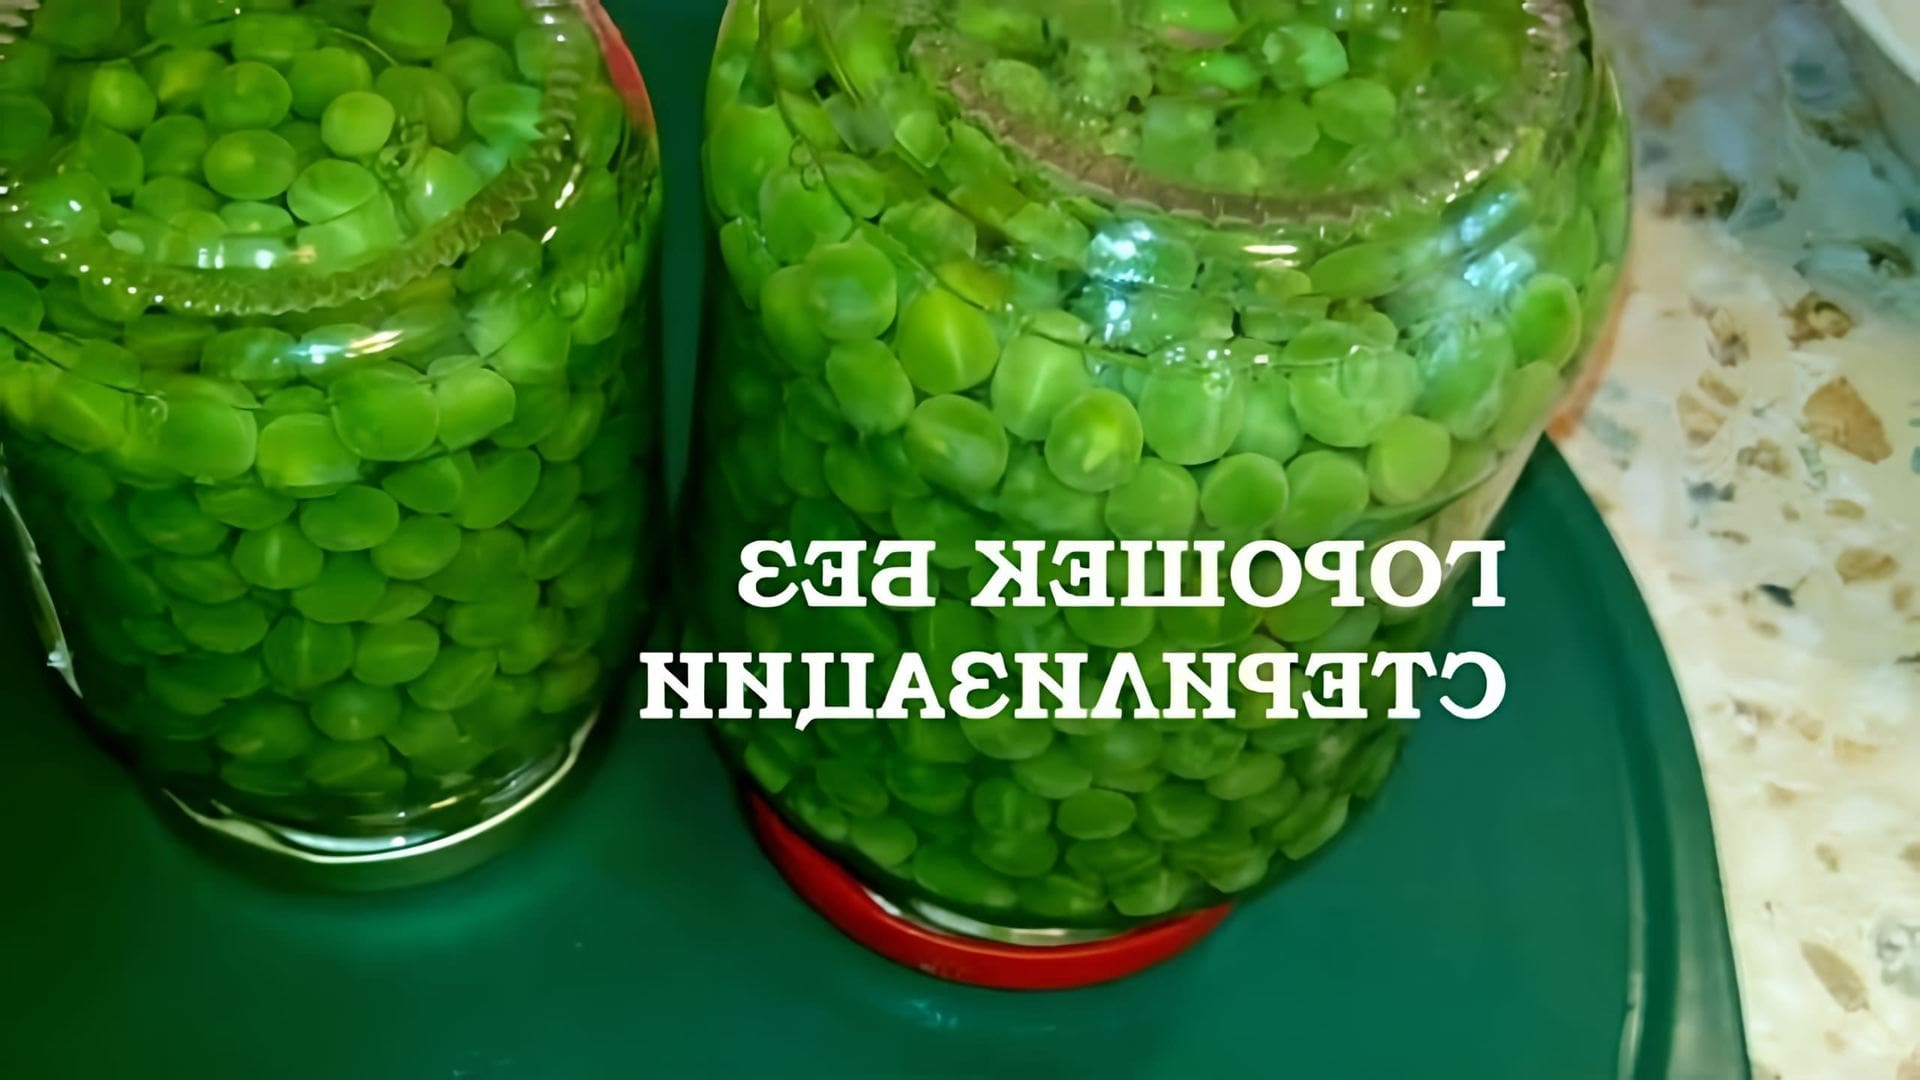 В этом видео Наталья готовит зеленый горошек без стерилизации